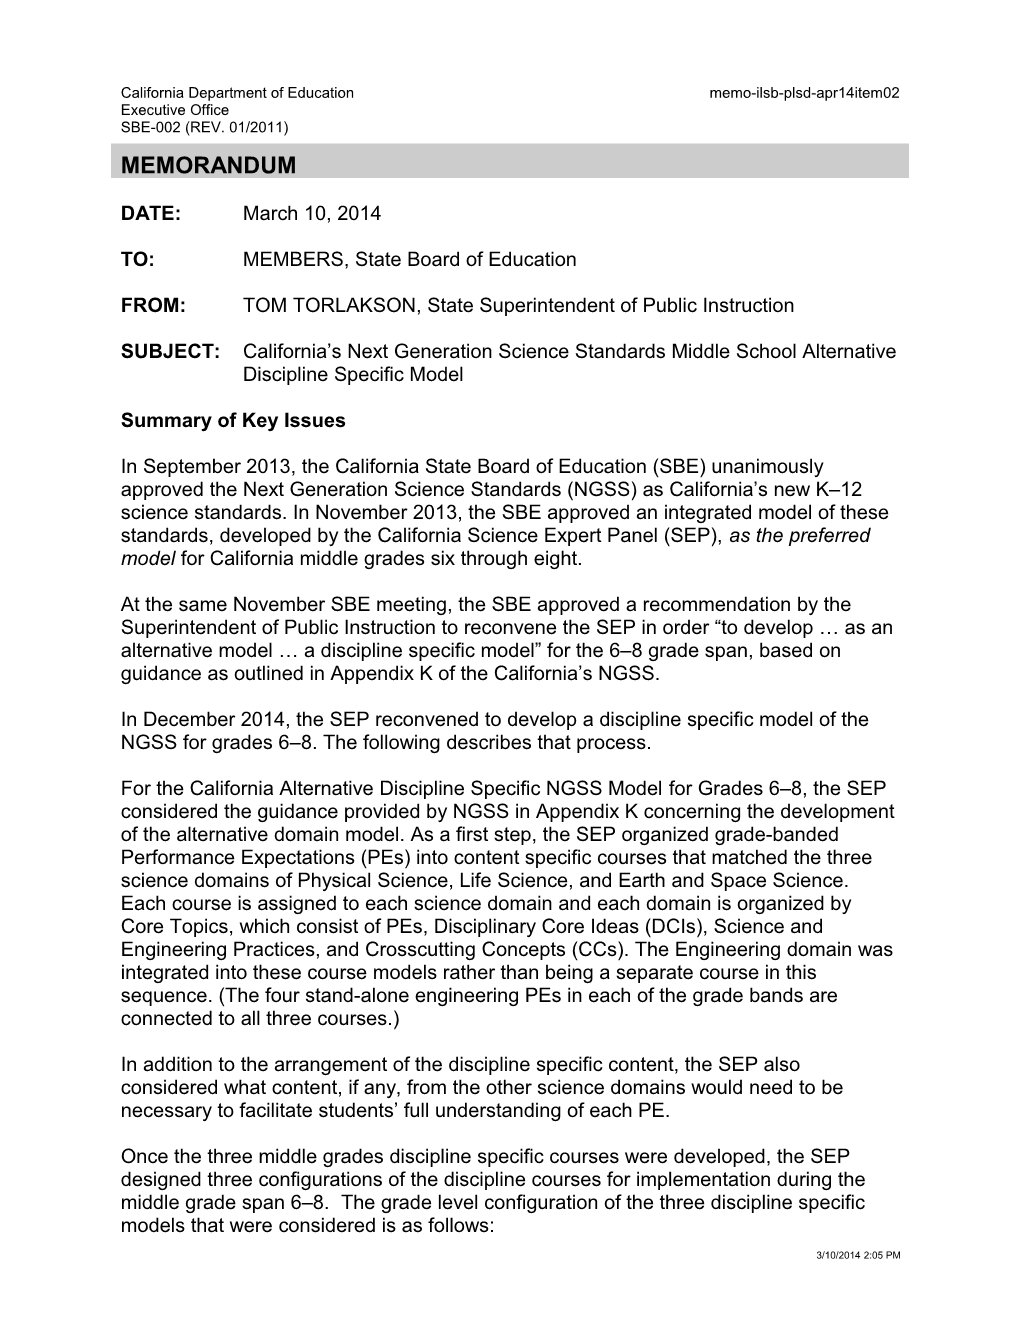 April 2014 Memorandum PLSD Item 02 - Information Memorandum (CA State Board of Education)